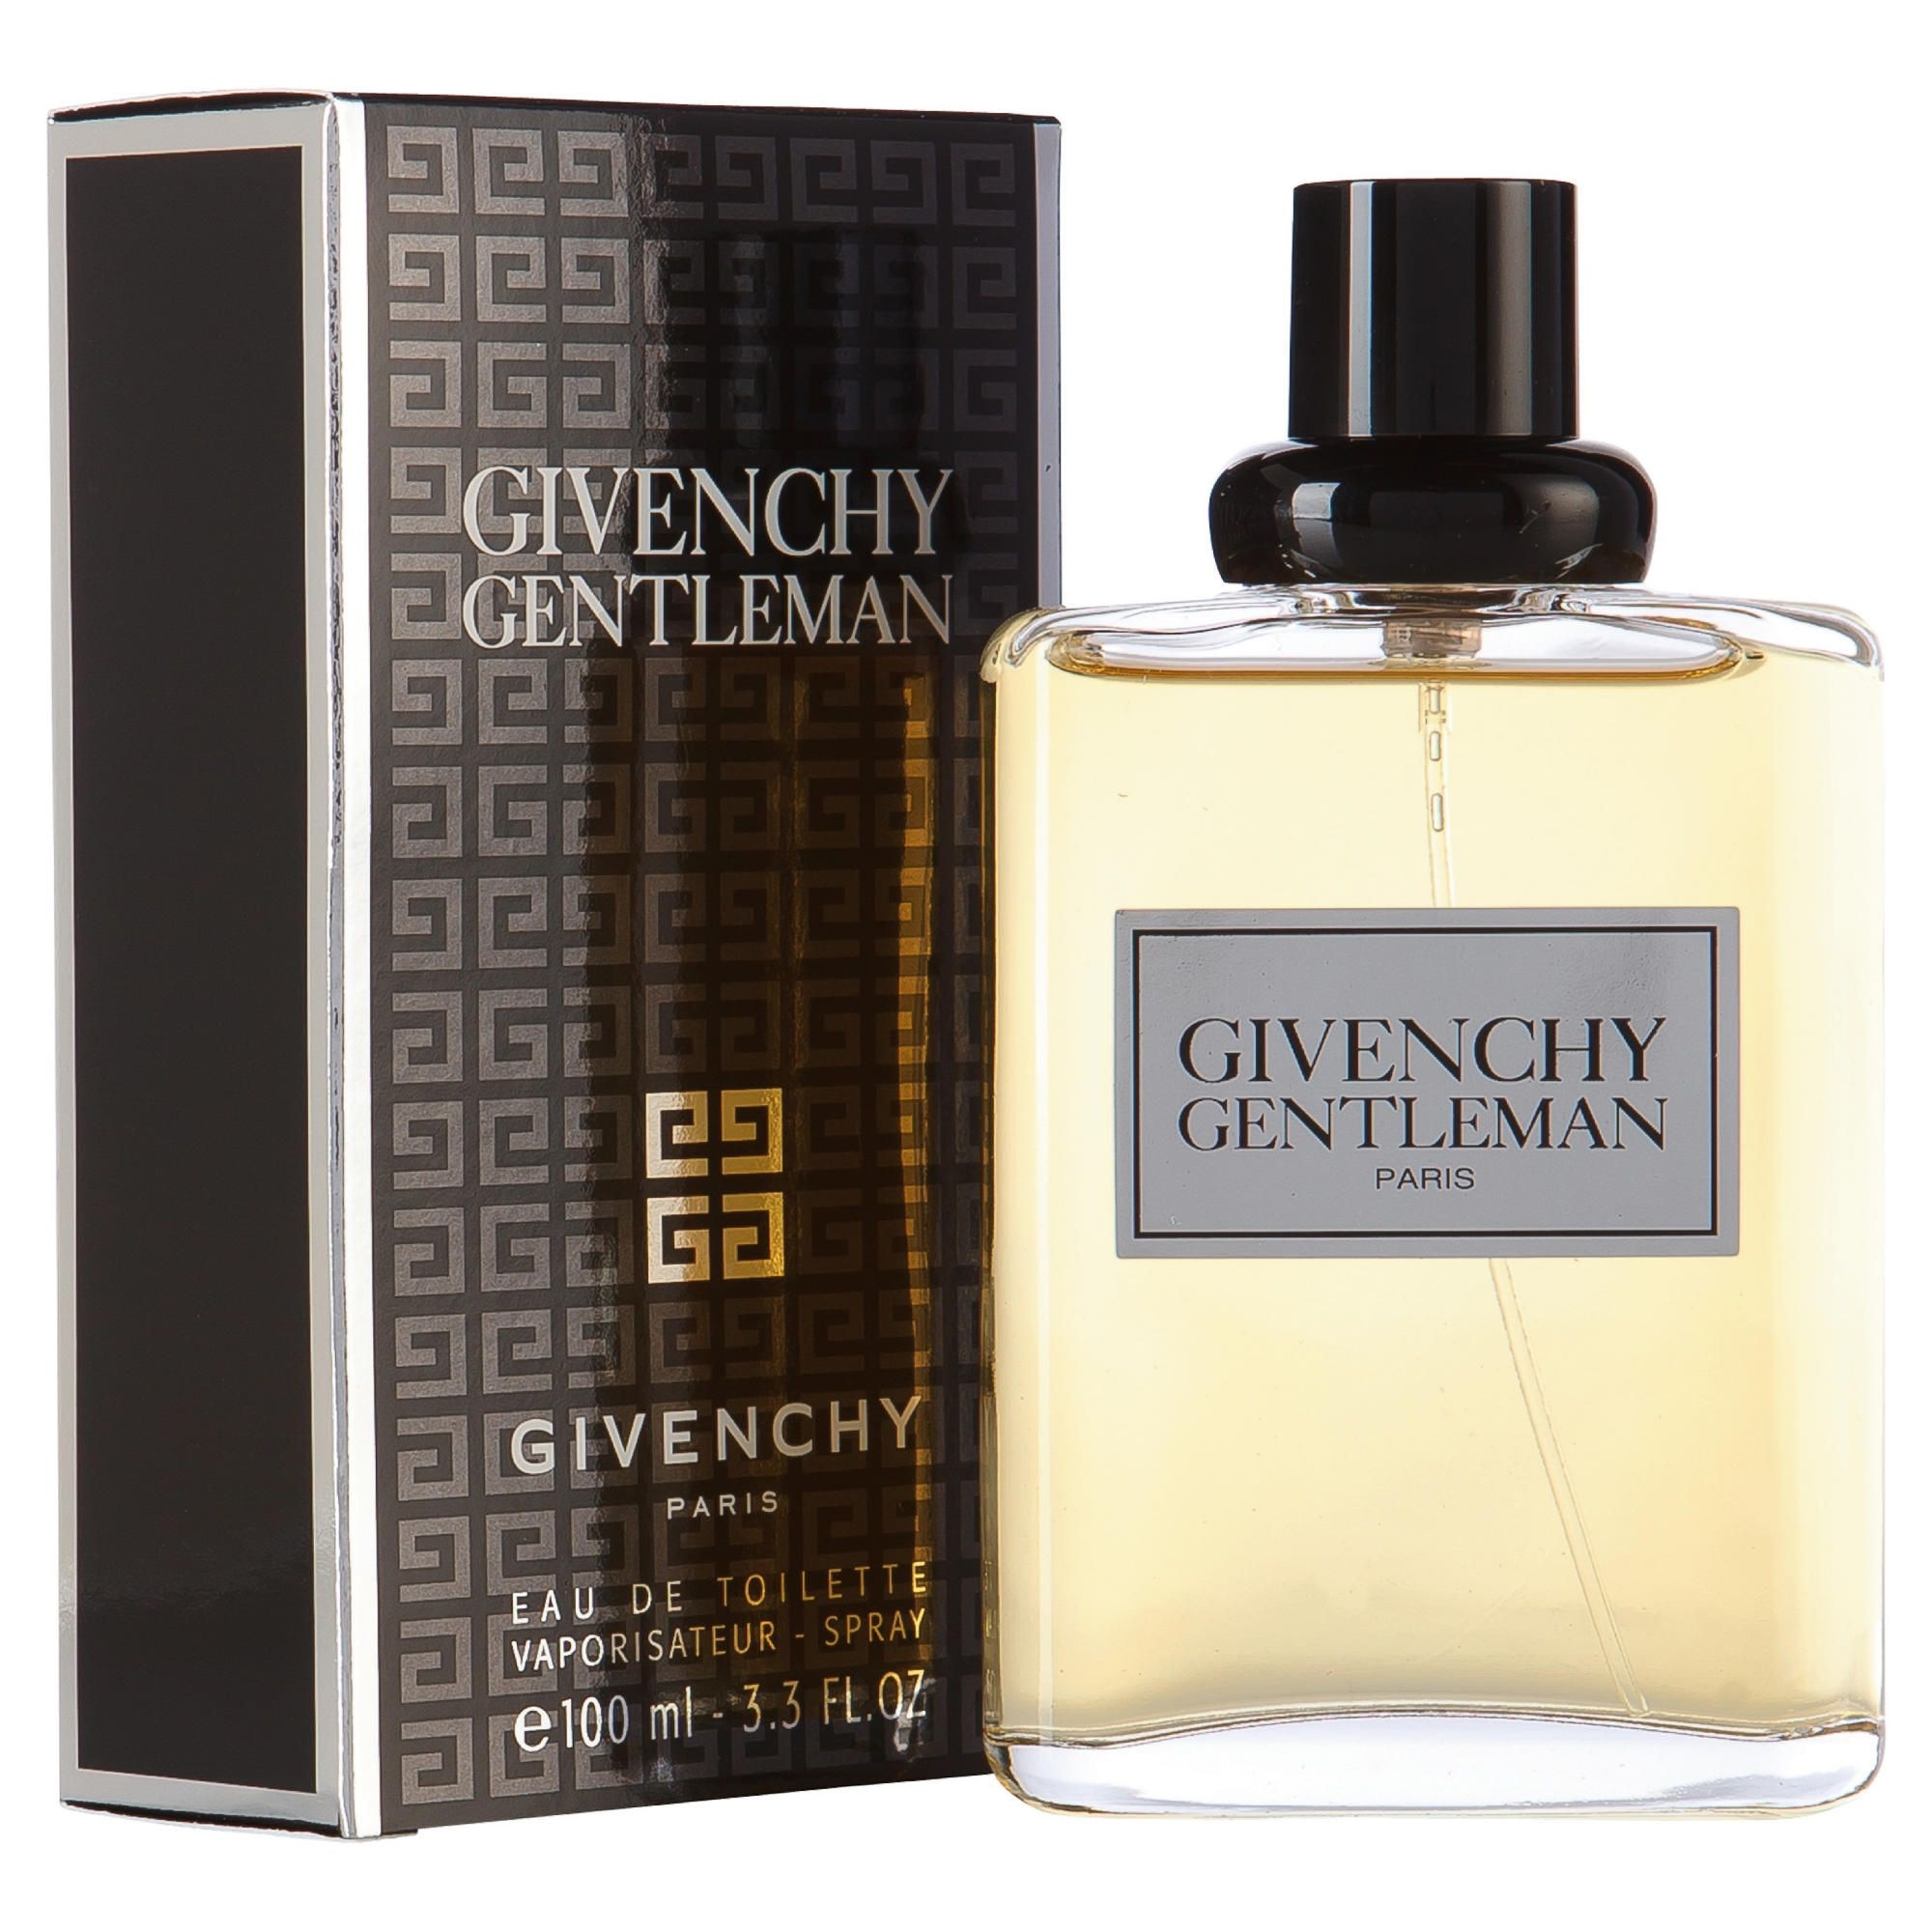 Parfum Givenchy Gentleman Eau De Toilette Givenchy Parfum Homme My